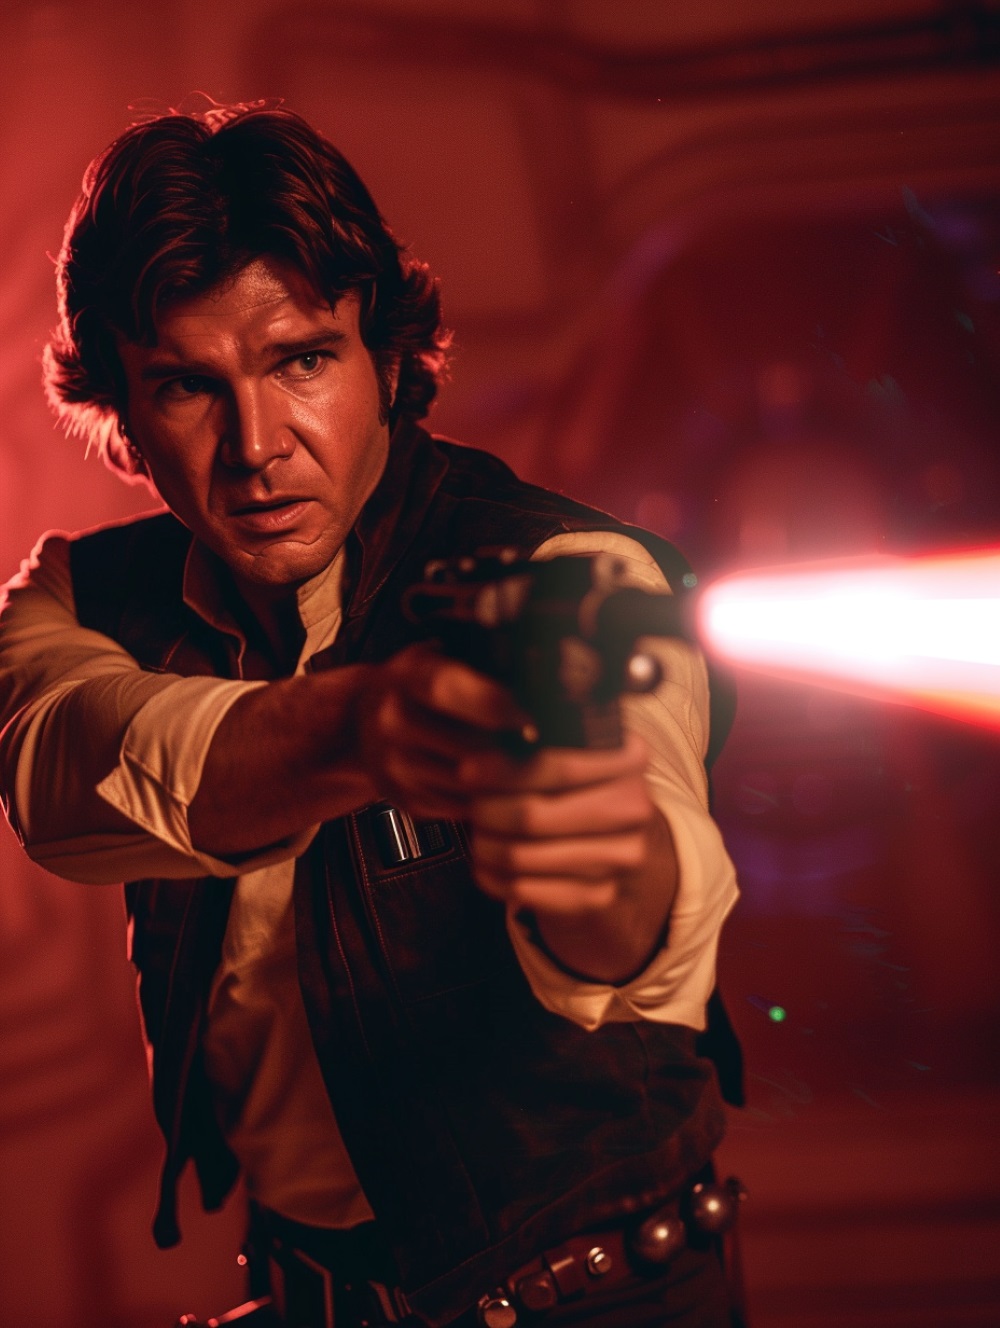 Han Solo is shooting